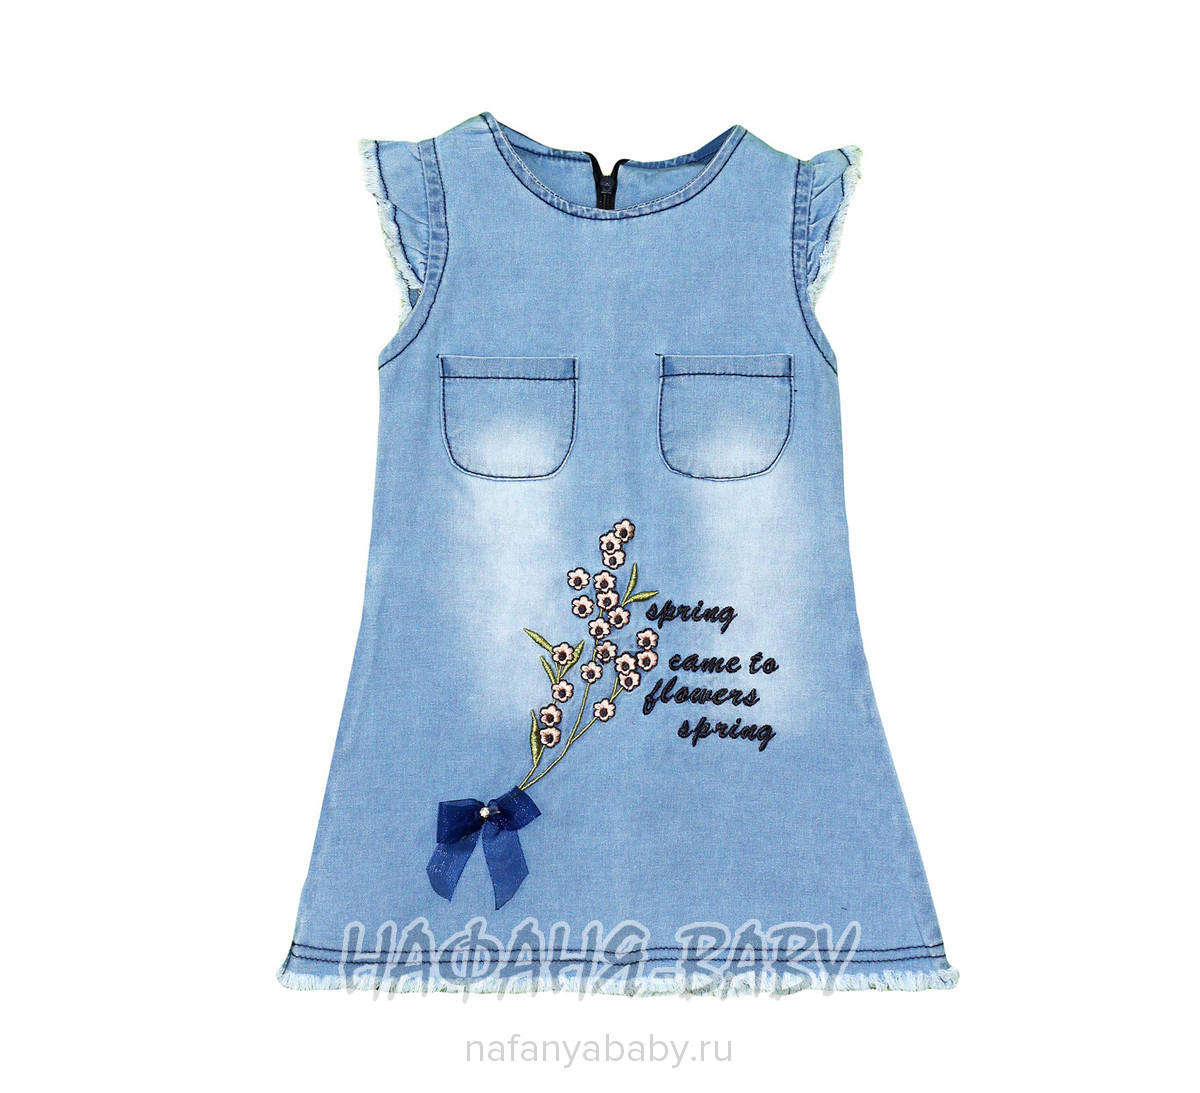 Детское джинсовое платье Moda Zeo арт: 3202, 5-9 лет, 1-4 года, оптом Турция